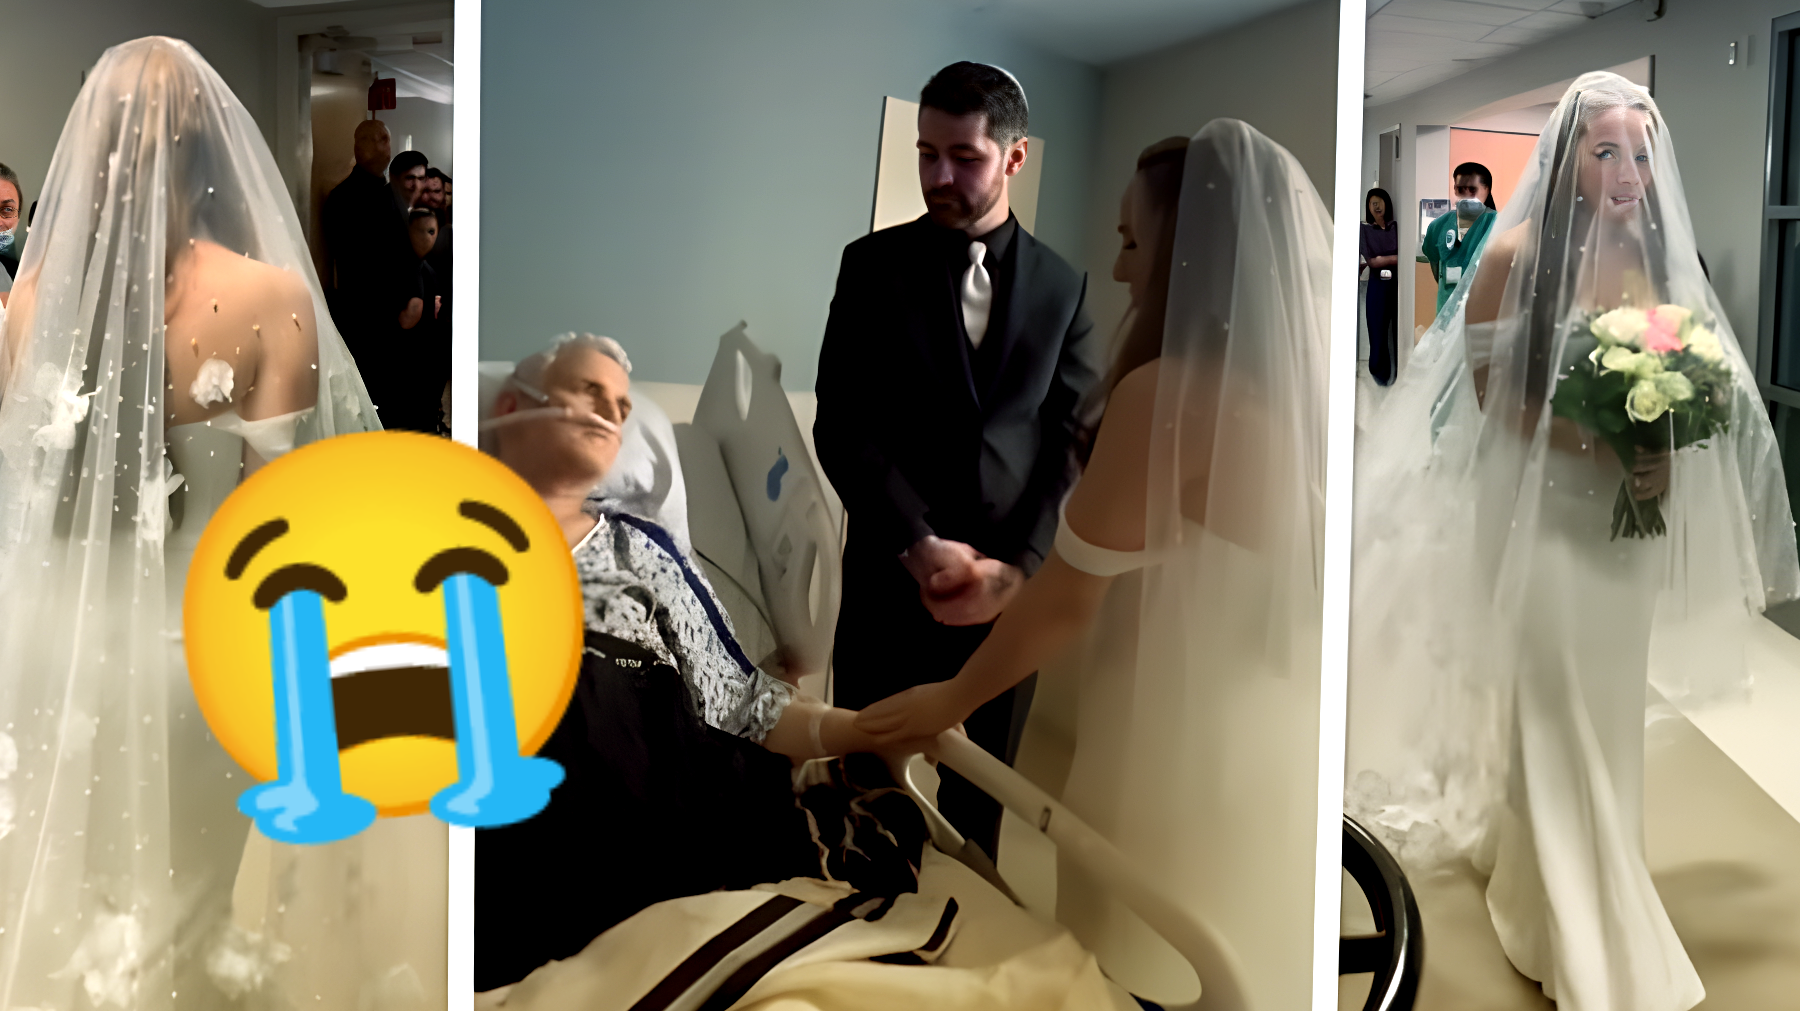 Tragedia e amore: sposa il suo amore in ospedale per l'ultimo desiderio del padre!